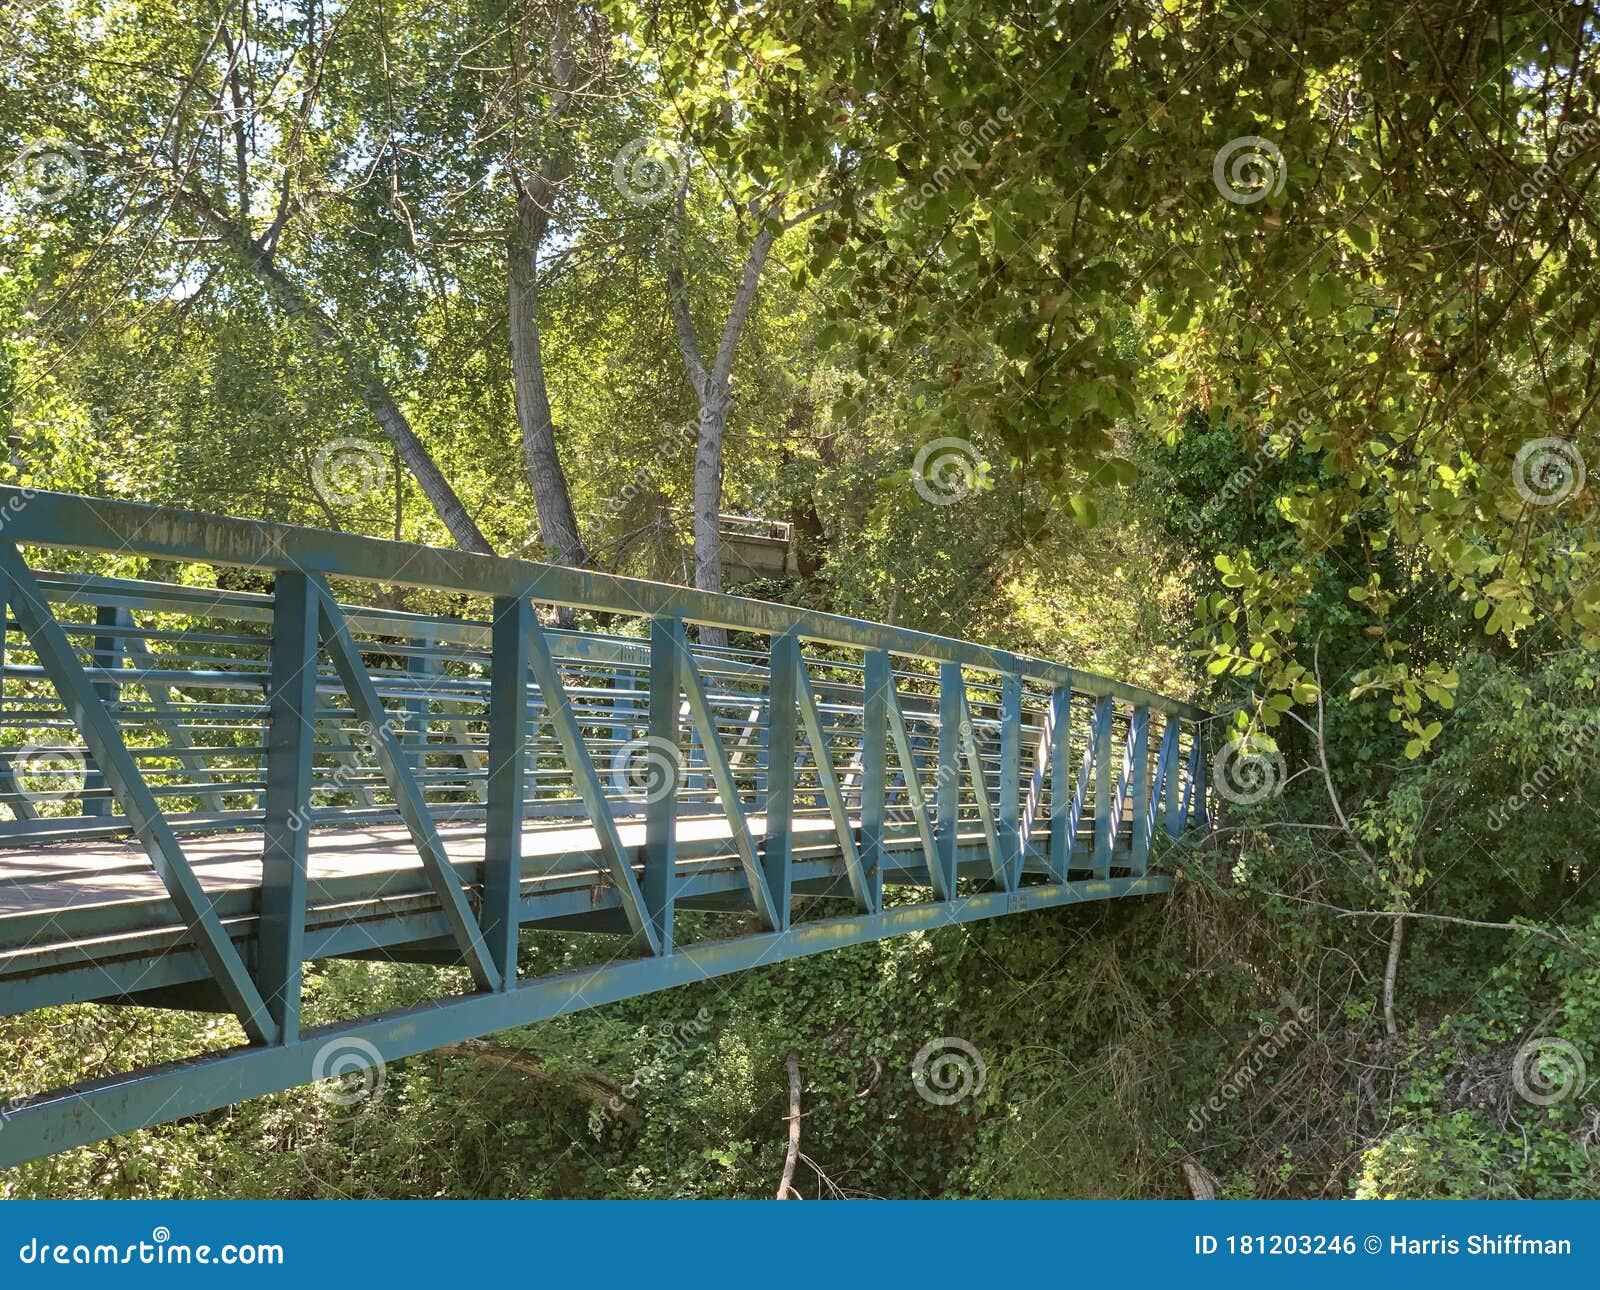 stevens creek footbridge